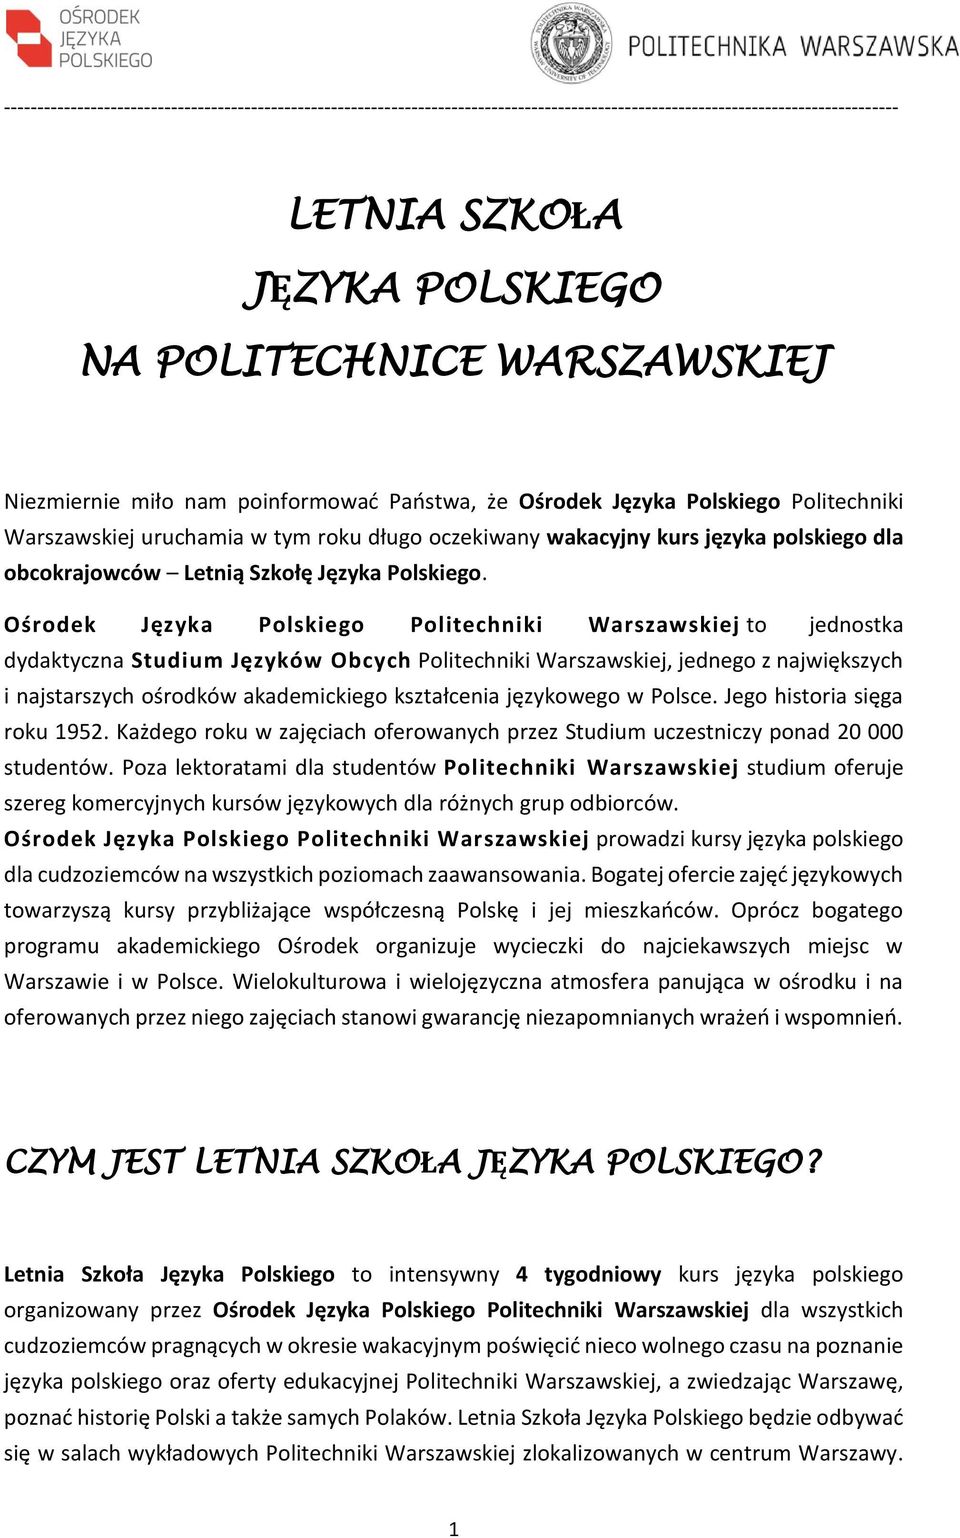 Ośrodek Języka Polskiego Politechniki Warszawskiej to jednostka dydaktyczna Studium Języków Obcych Politechniki Warszawskiej, jednego z największych i najstarszych ośrodków akademickiego kształcenia